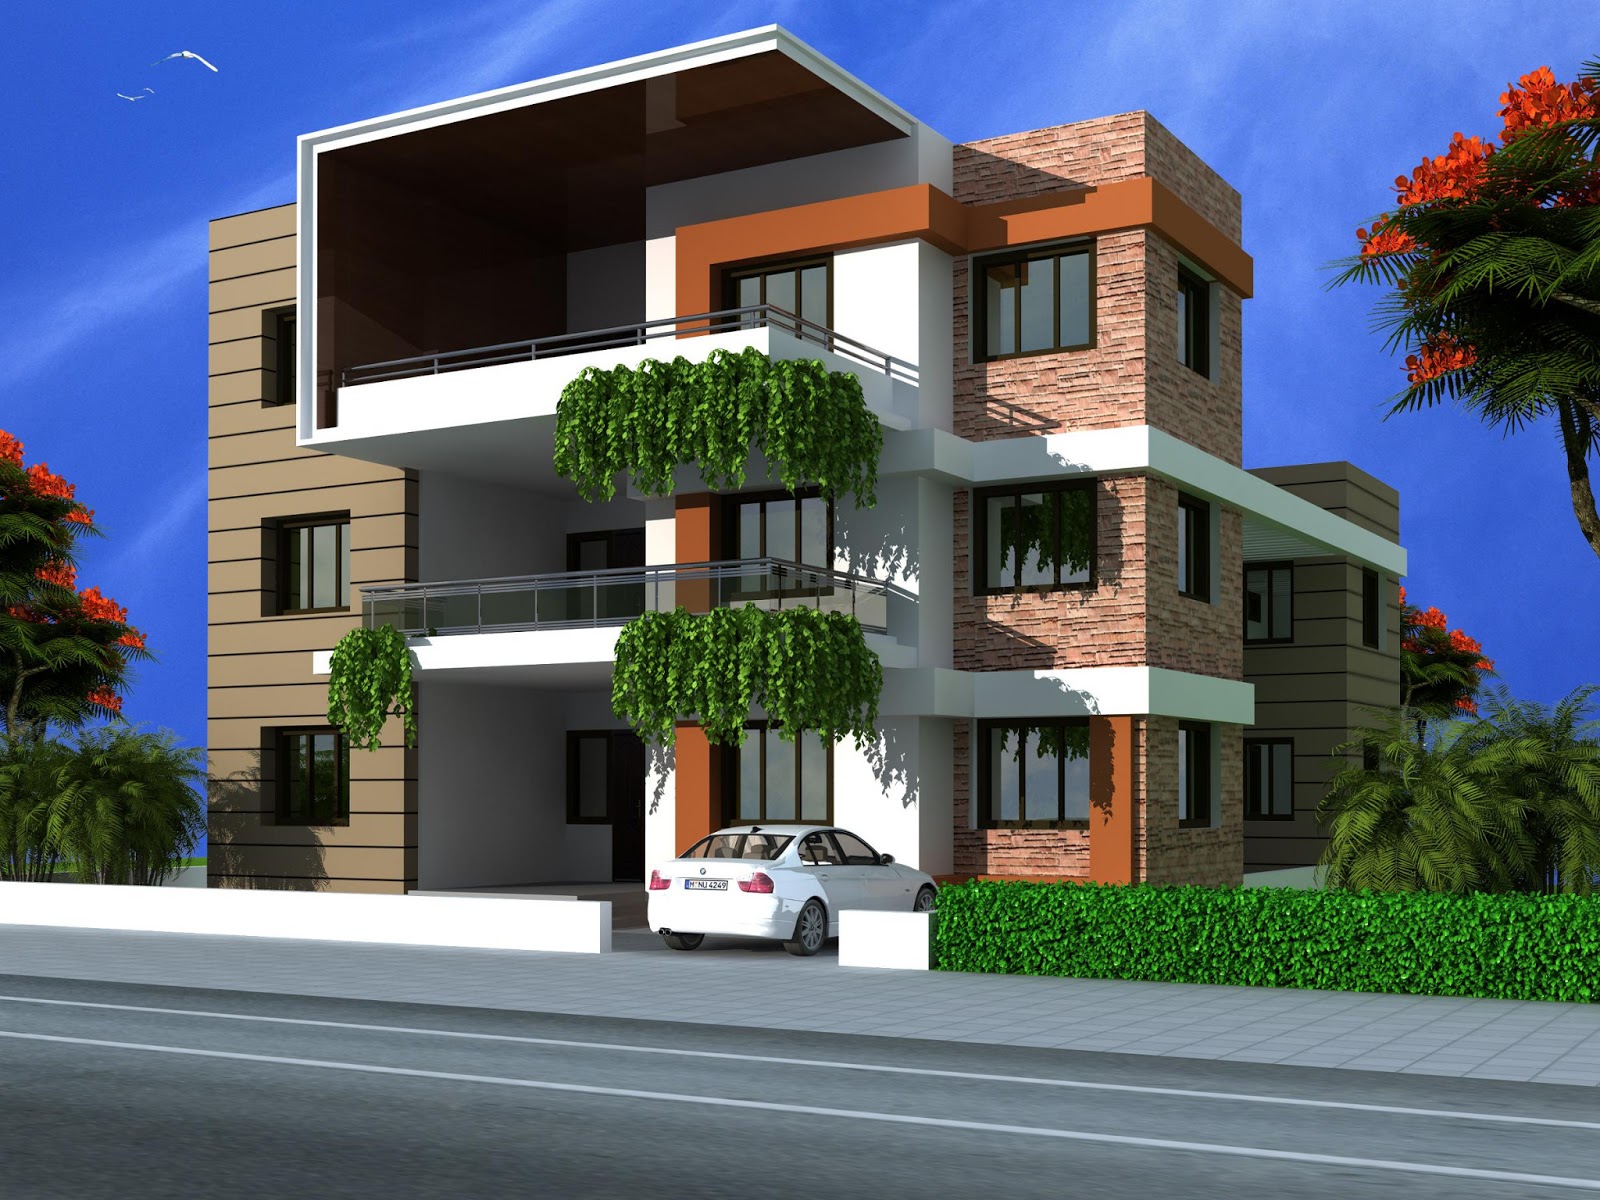 The 21 Best Triplex Building Home Plans Blueprints 69106